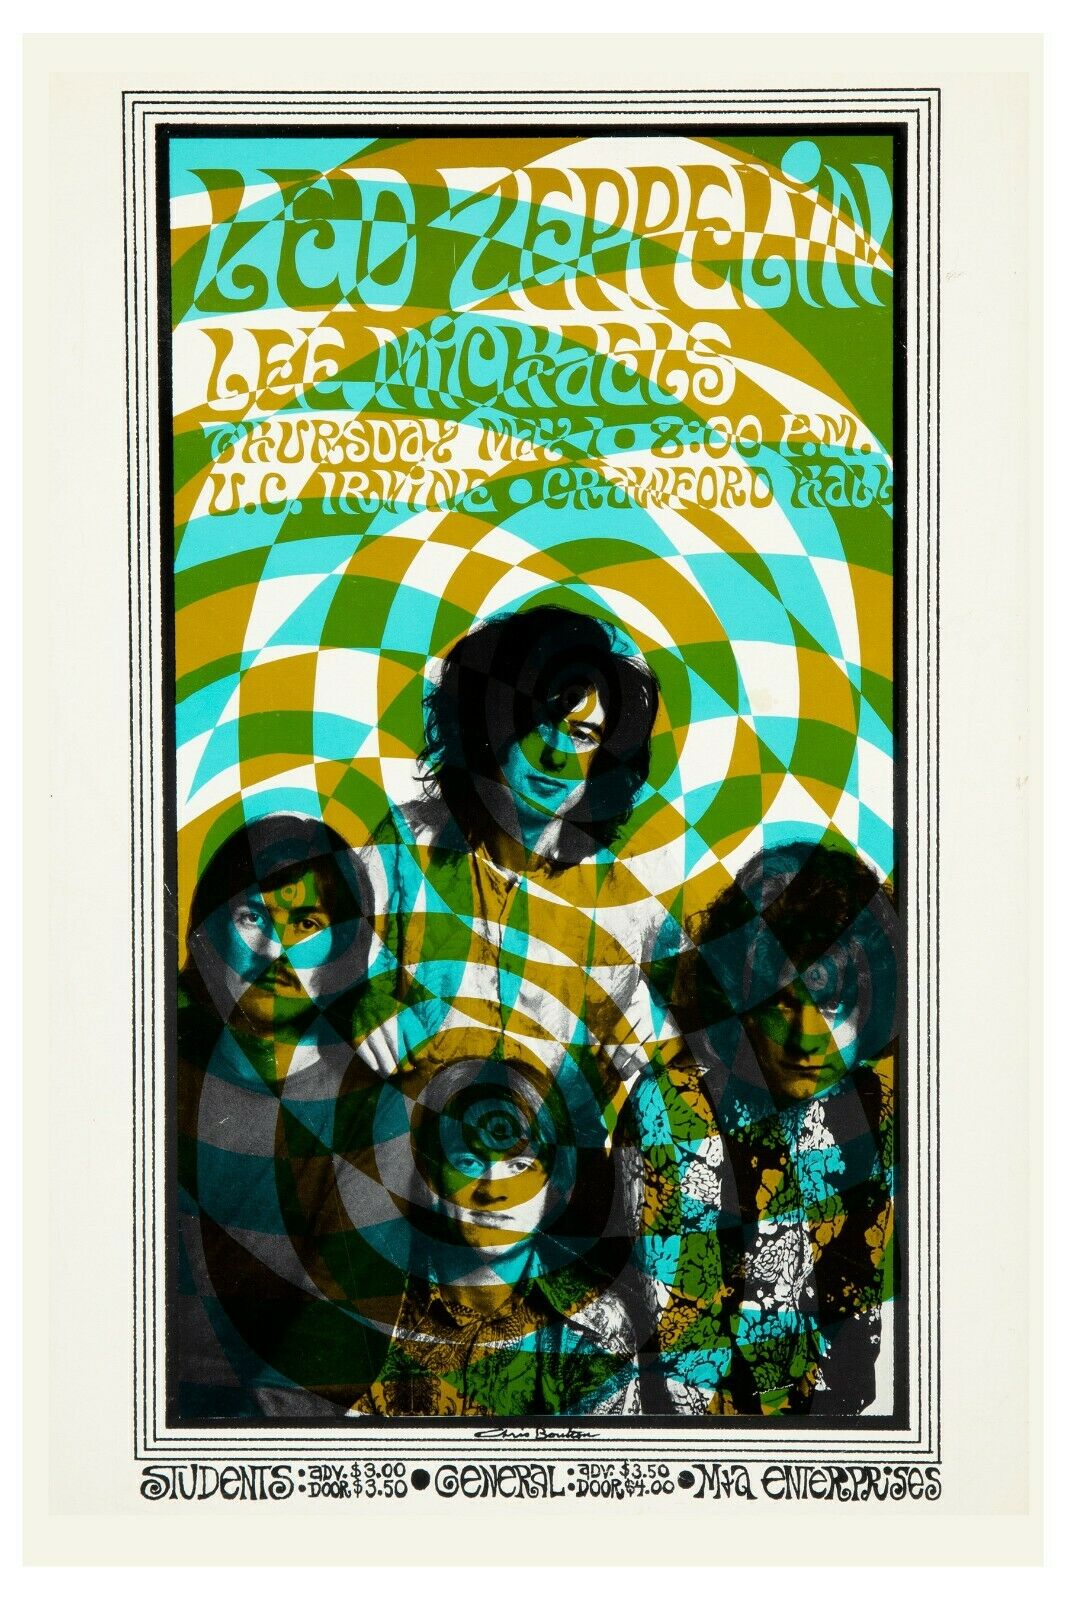 Led Zeppelin at U.C. Irvine Psychedelic Concert Poster 1969  12x18